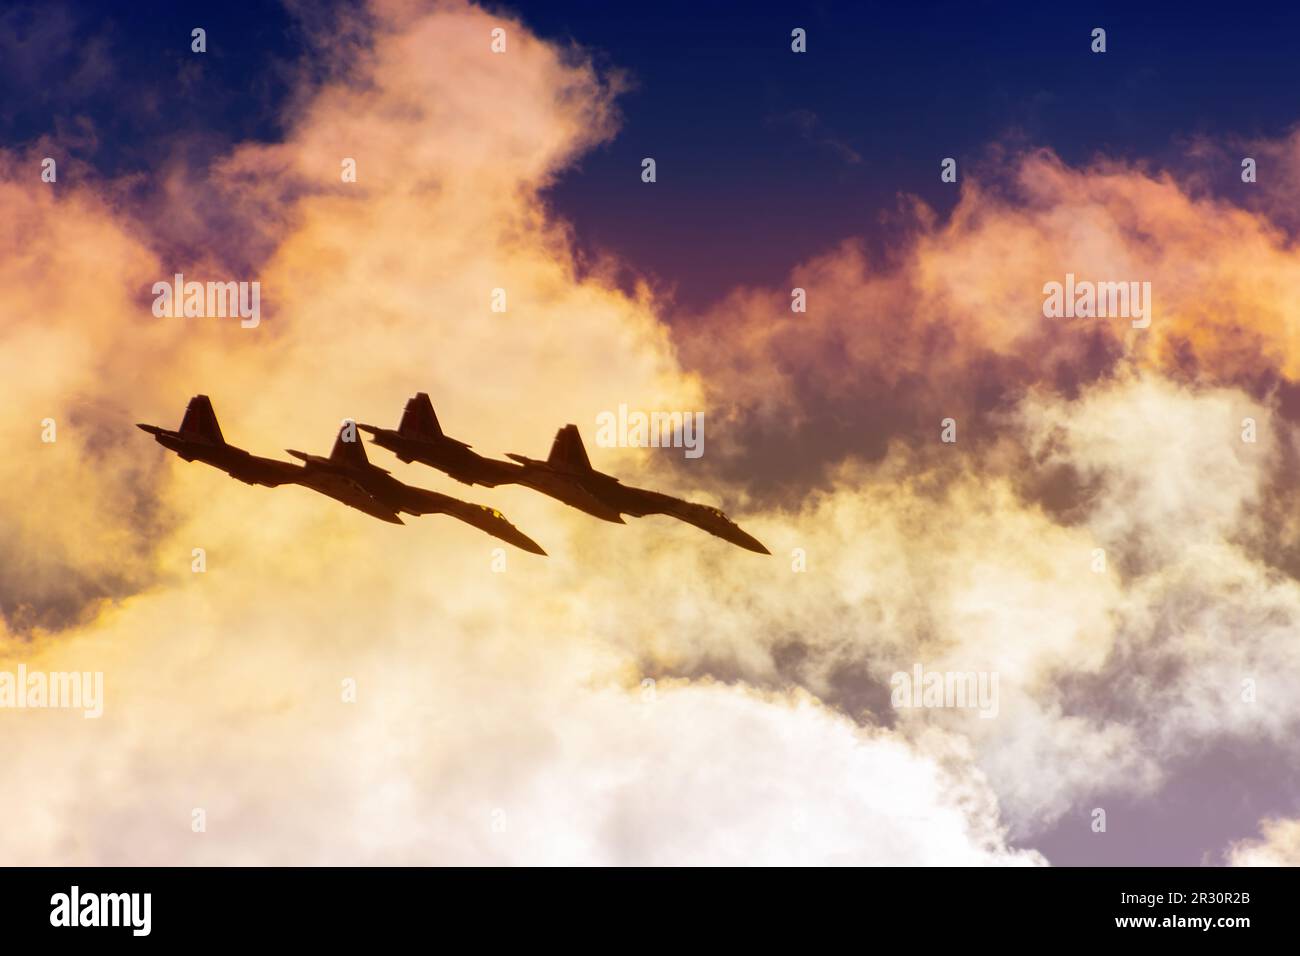 Gruppe von vier Flugzeugen Kampfflugzeug Düsenflugzeug Geschwindigkeit Kampfmission Sonne Glow Toned Gradient Wolken Himmel. Stockfoto